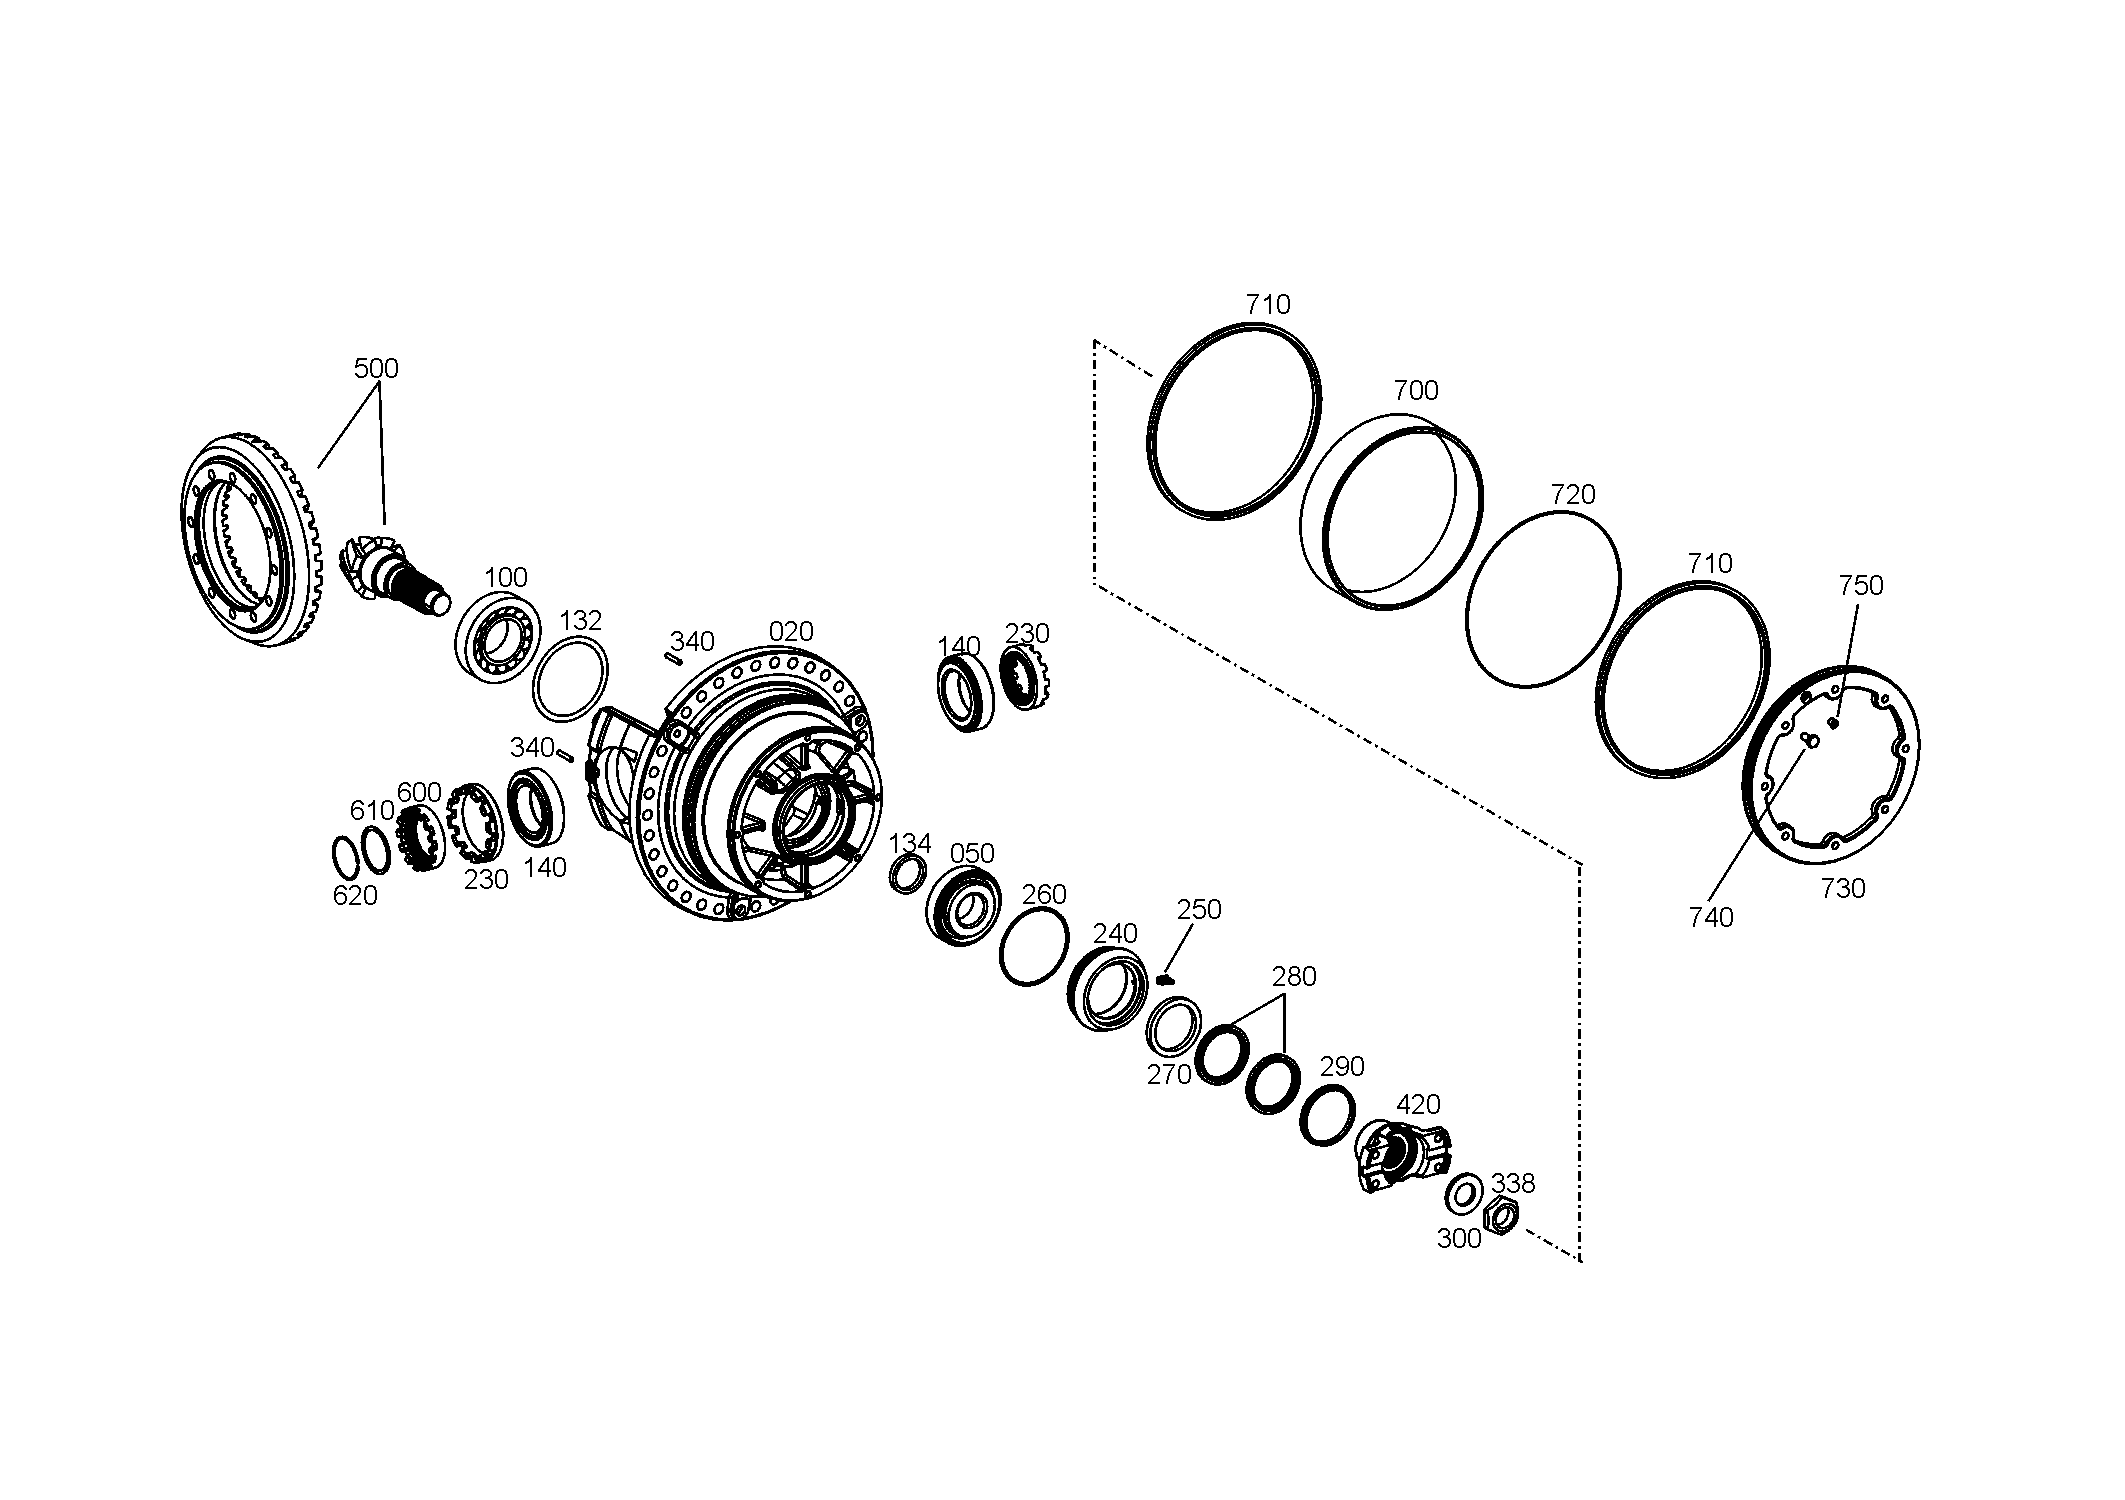 drawing for SCHOPF MASCHINENBAU GMBH 31007 - HEXAGON SCREW (figure 5)